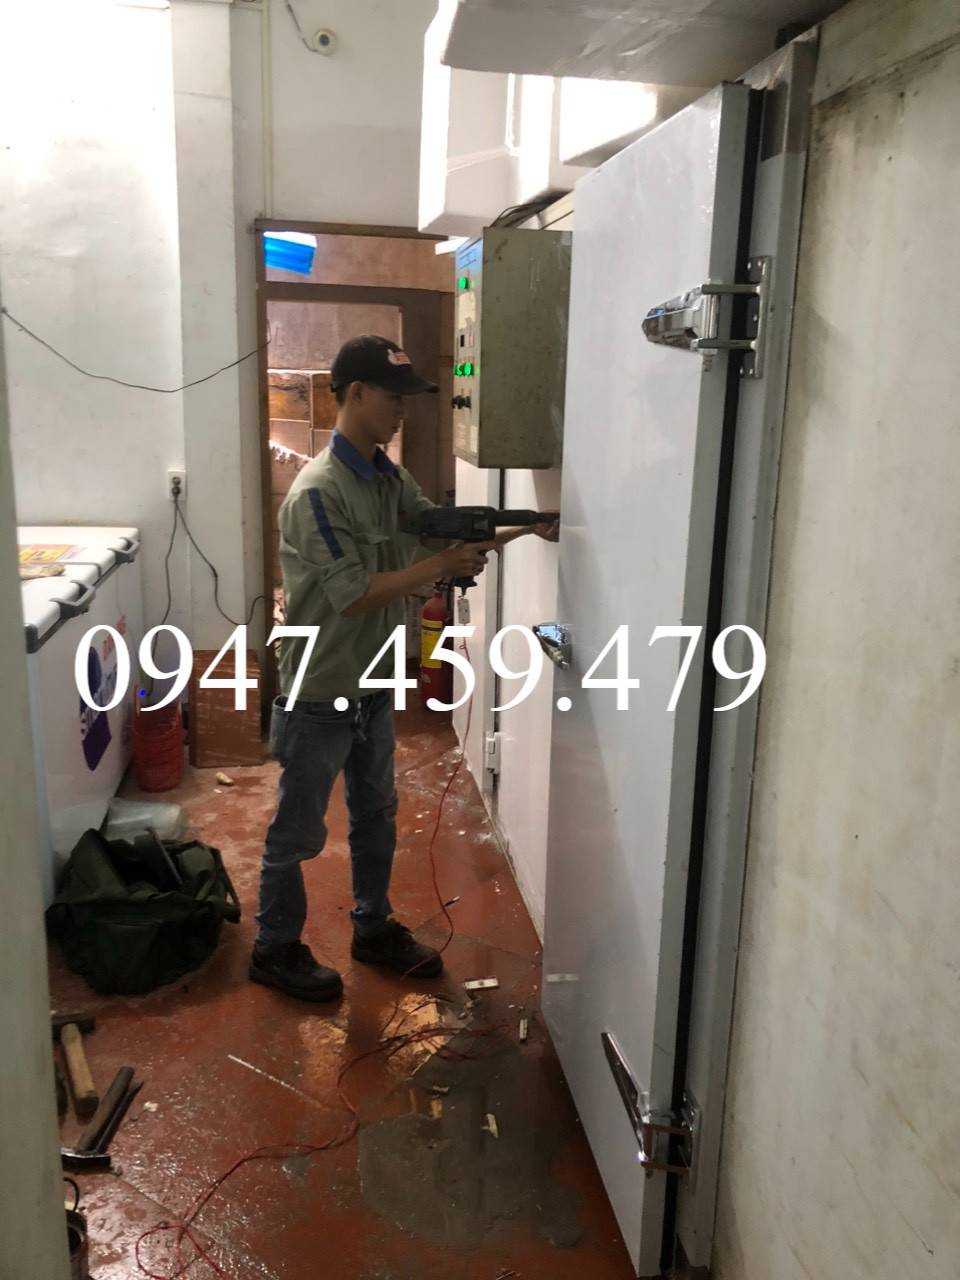 Sửa chữa kho lạnh tận nơi tại Bình Phước ,HL: 0947.459.479,Kho lạnh, kho lạnh